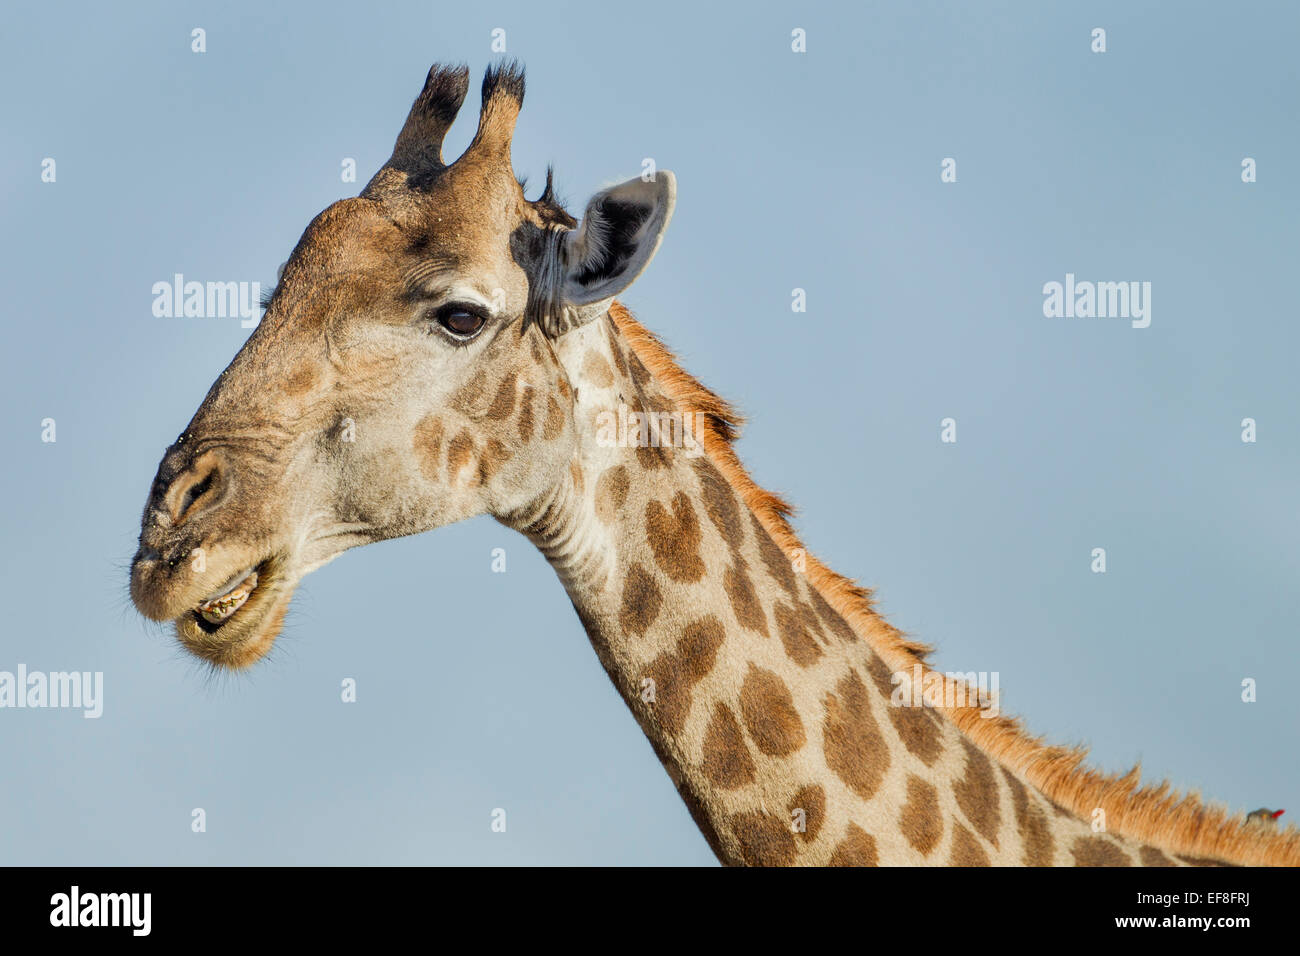 Africa, Botswana, Moremi Game Reserve, Close-up ritratto di Giraffe (Giraffa camelopardalis) a denti stretti ad imitazione di un sorriso Foto Stock